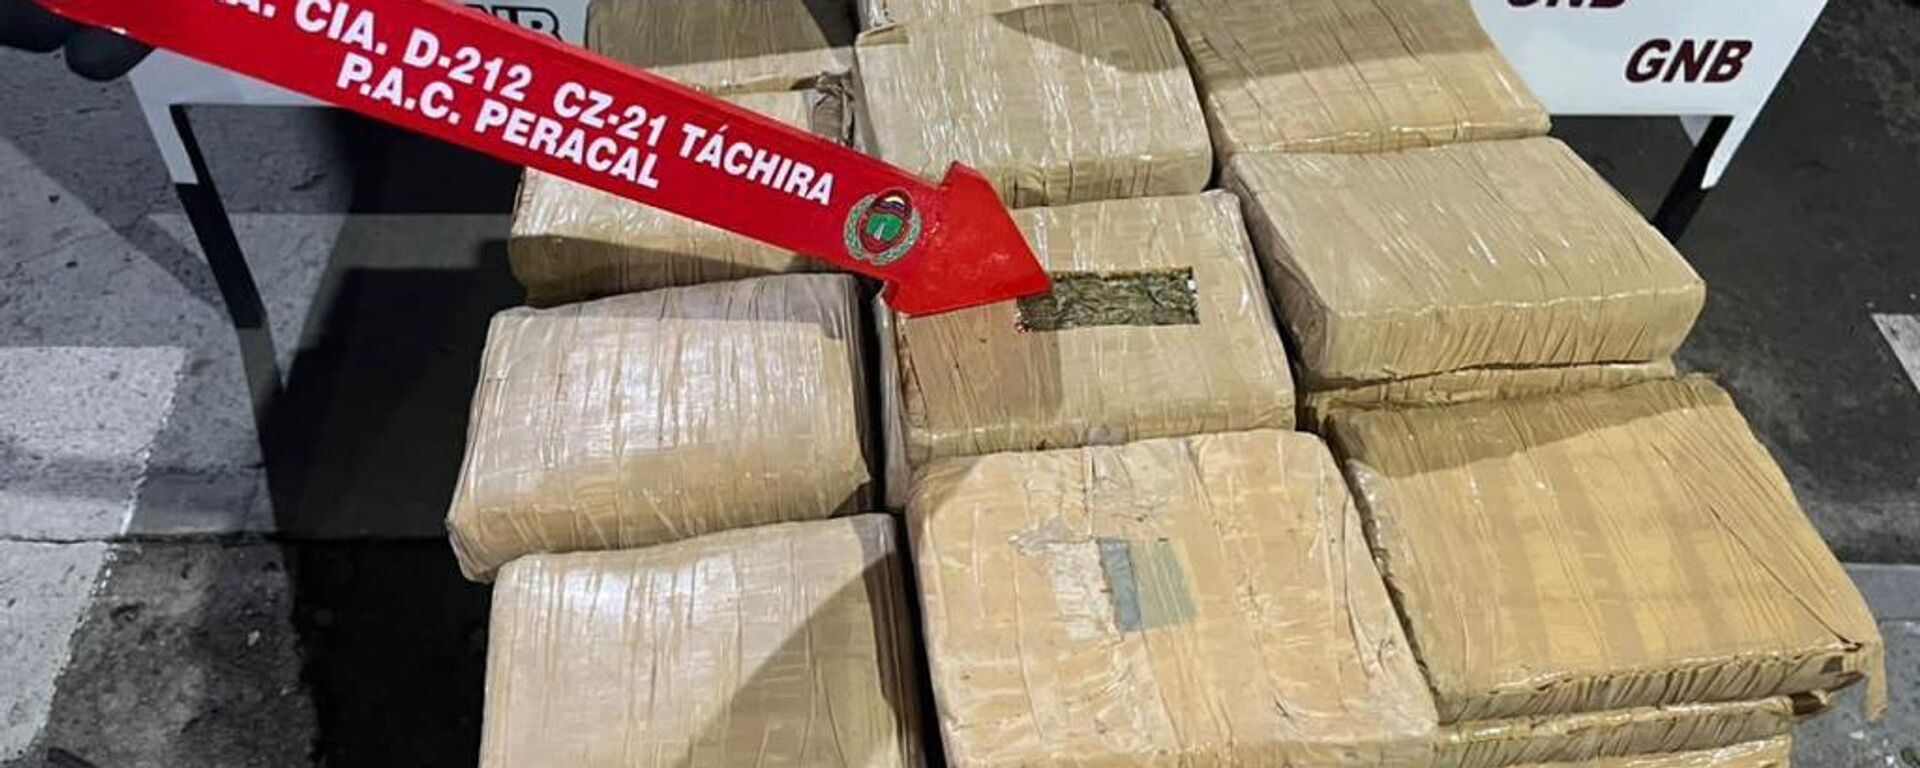 La Fuerza Armada venezolana incauta 91 kilos de marihuana en estado fronterizo con Colombia - Sputnik Mundo, 1920, 28.11.2022